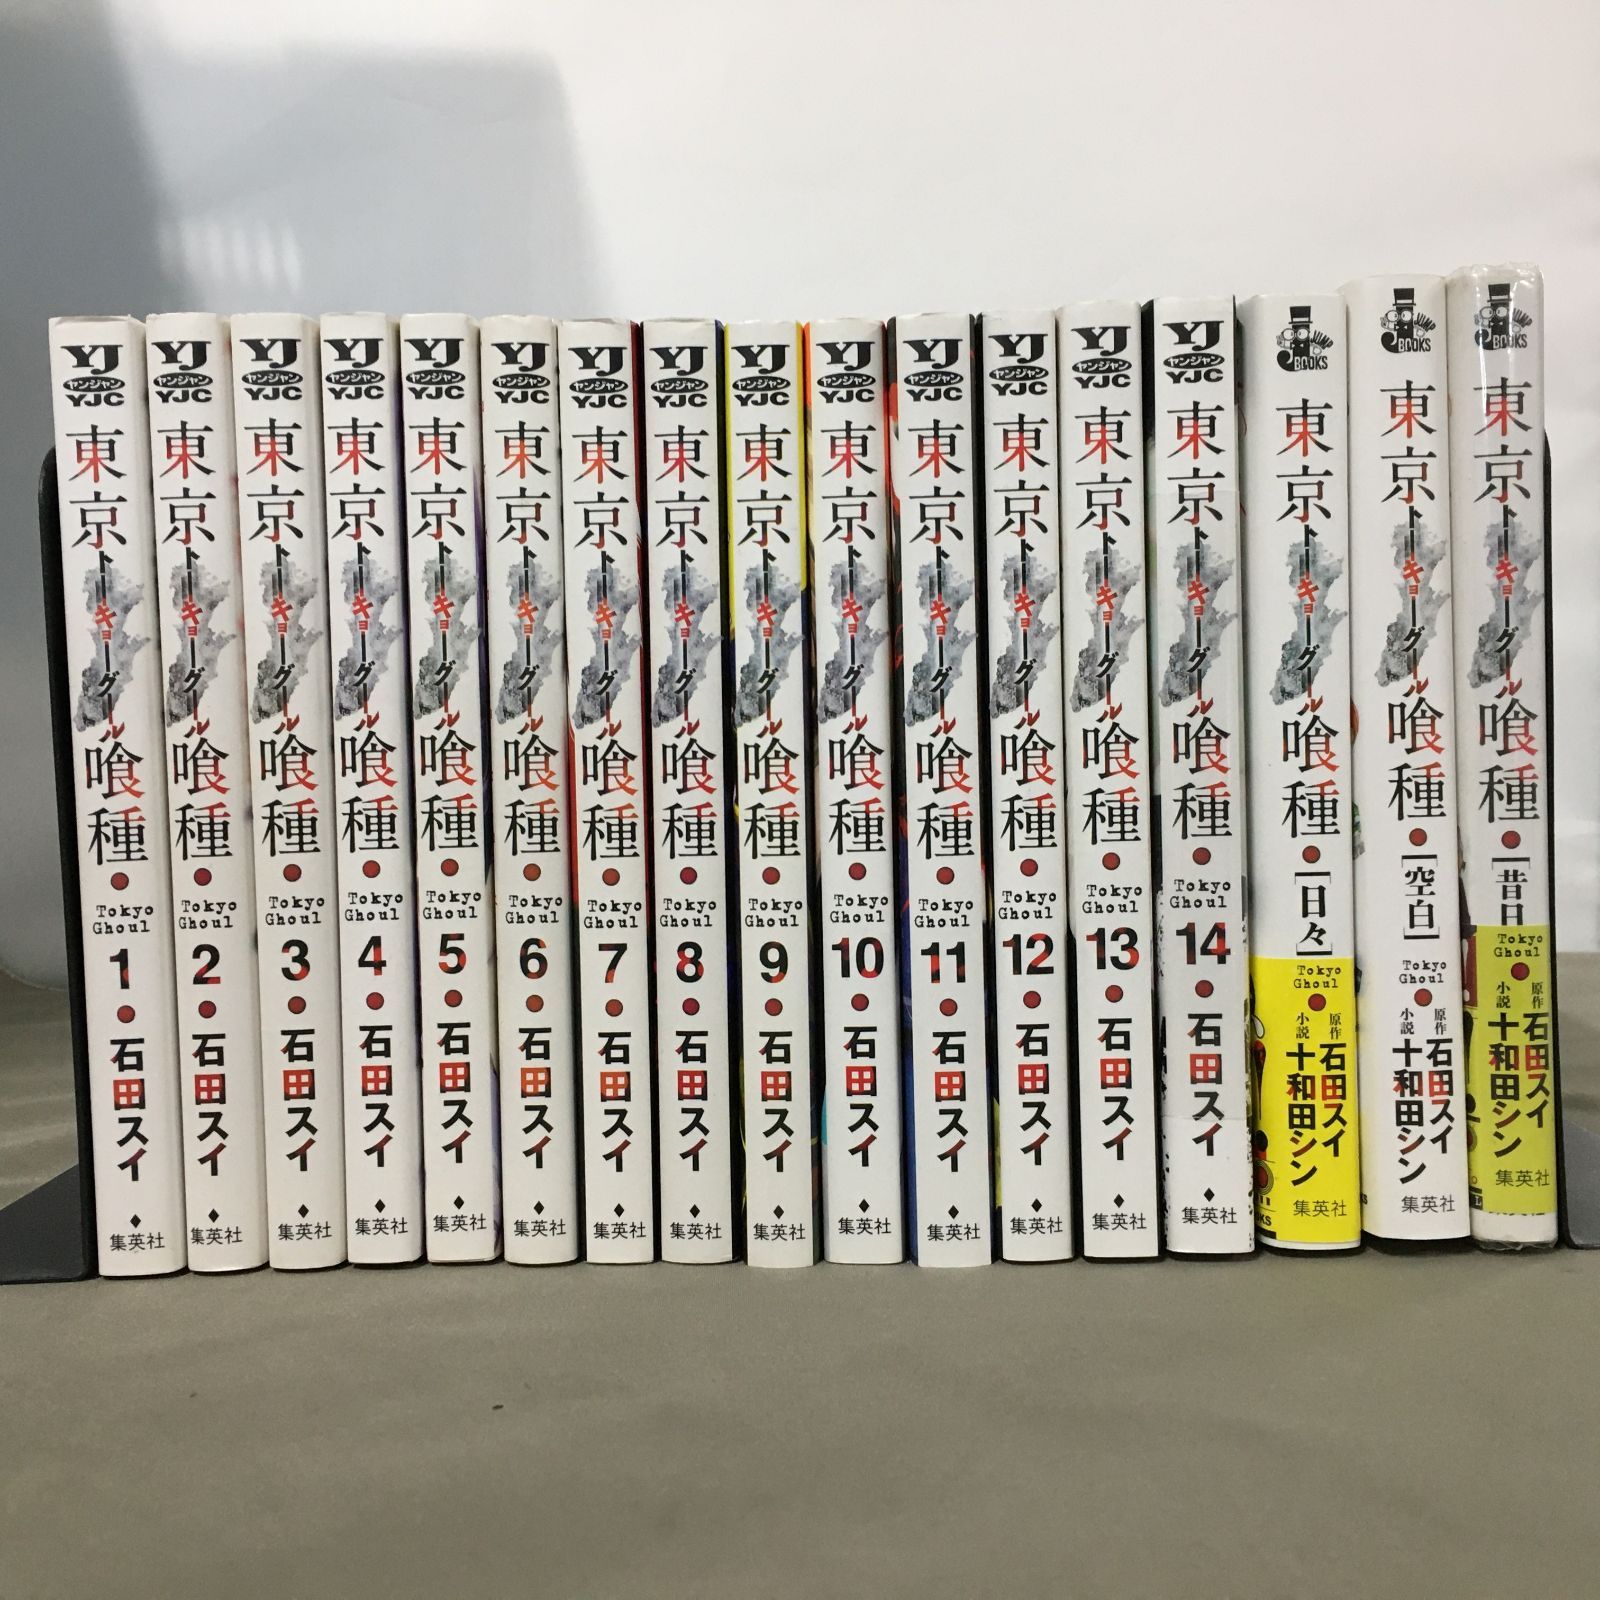 東京喰種(トーキョーグール) 1-14巻 全巻セット + おまけ3冊